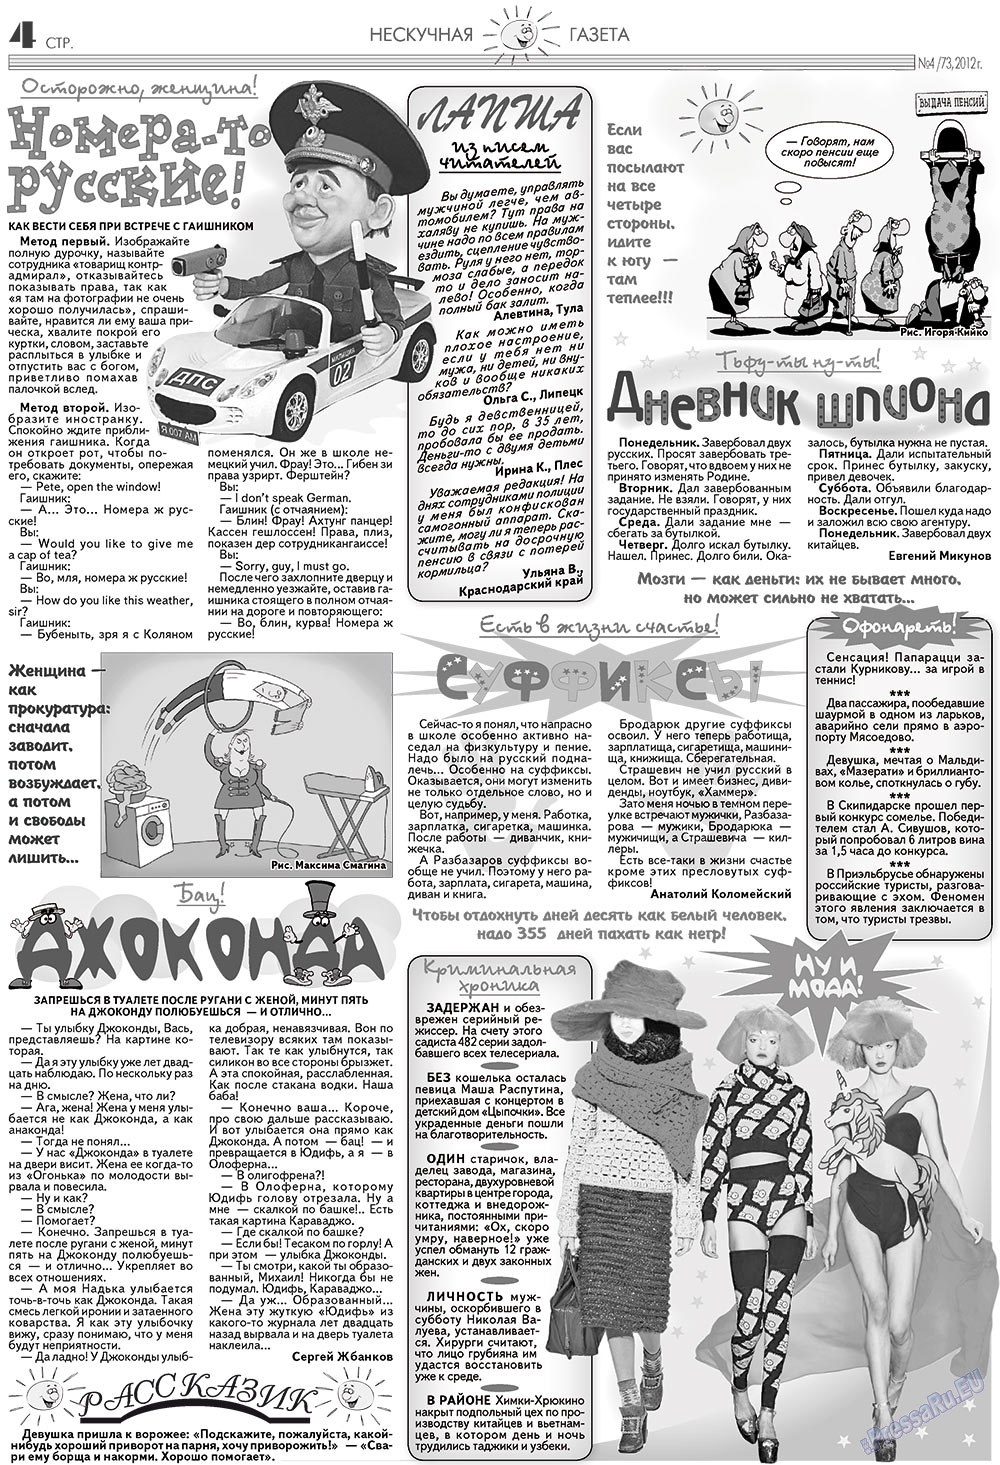 Нескучная газета (журнал). 2012 год, номер 4, стр. 4